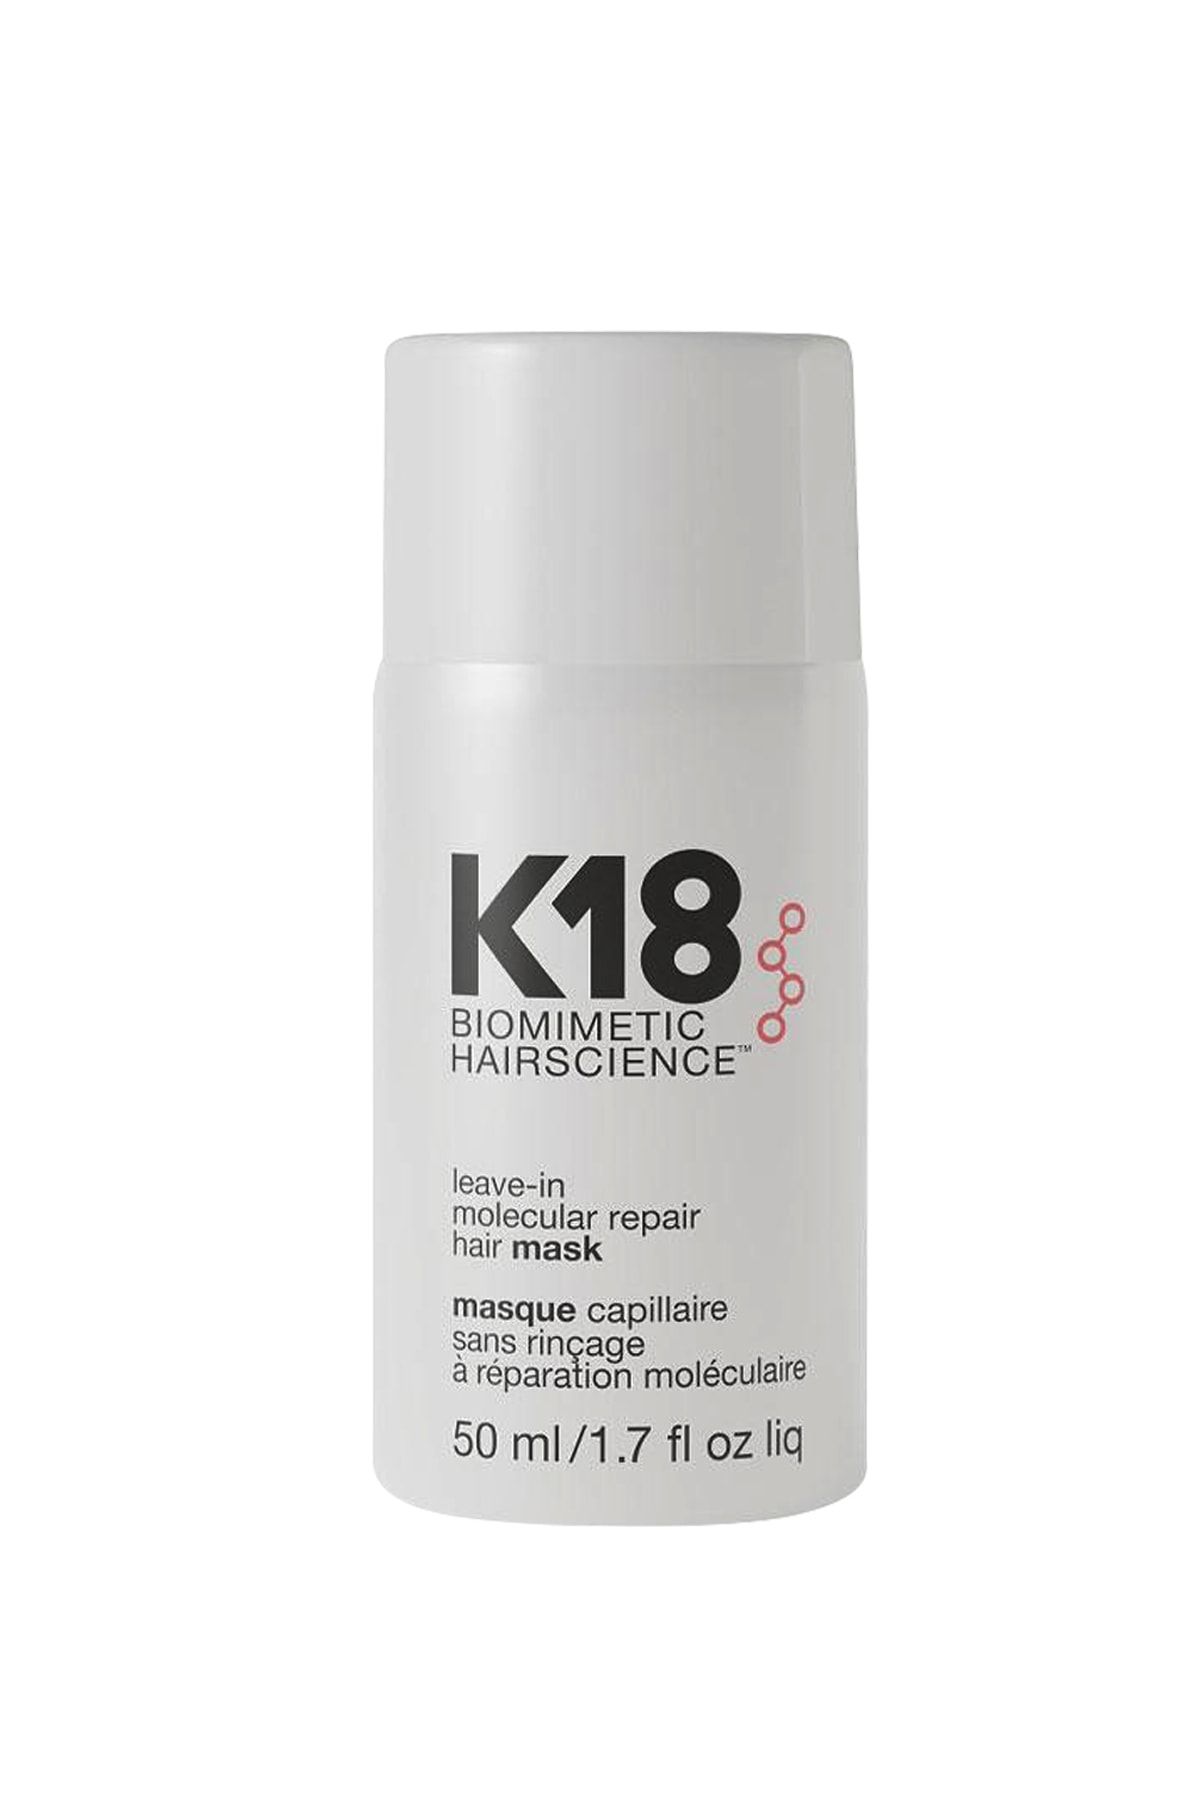 Маска для волос repair отзывы. Маска несмываемая k18 для молекулярного восстановления волос, 5 мл k18. K18 hair leave-in Molecular Repair hair Mask. K18 несмываемая маска leave-in Molecular Repair Mask. K18 hair.